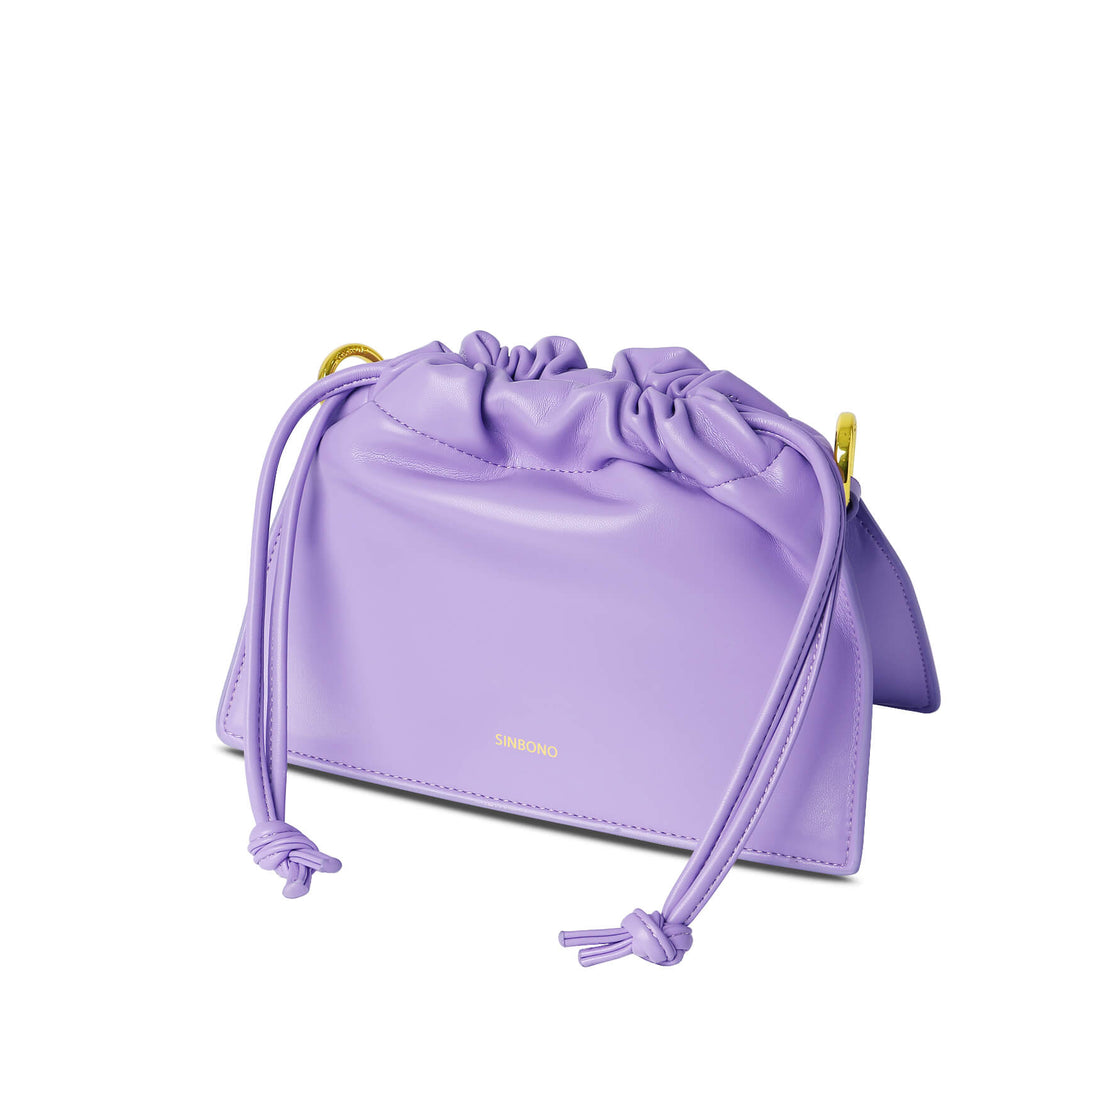 SINBONO Drawstring Vegan Handbag Purple